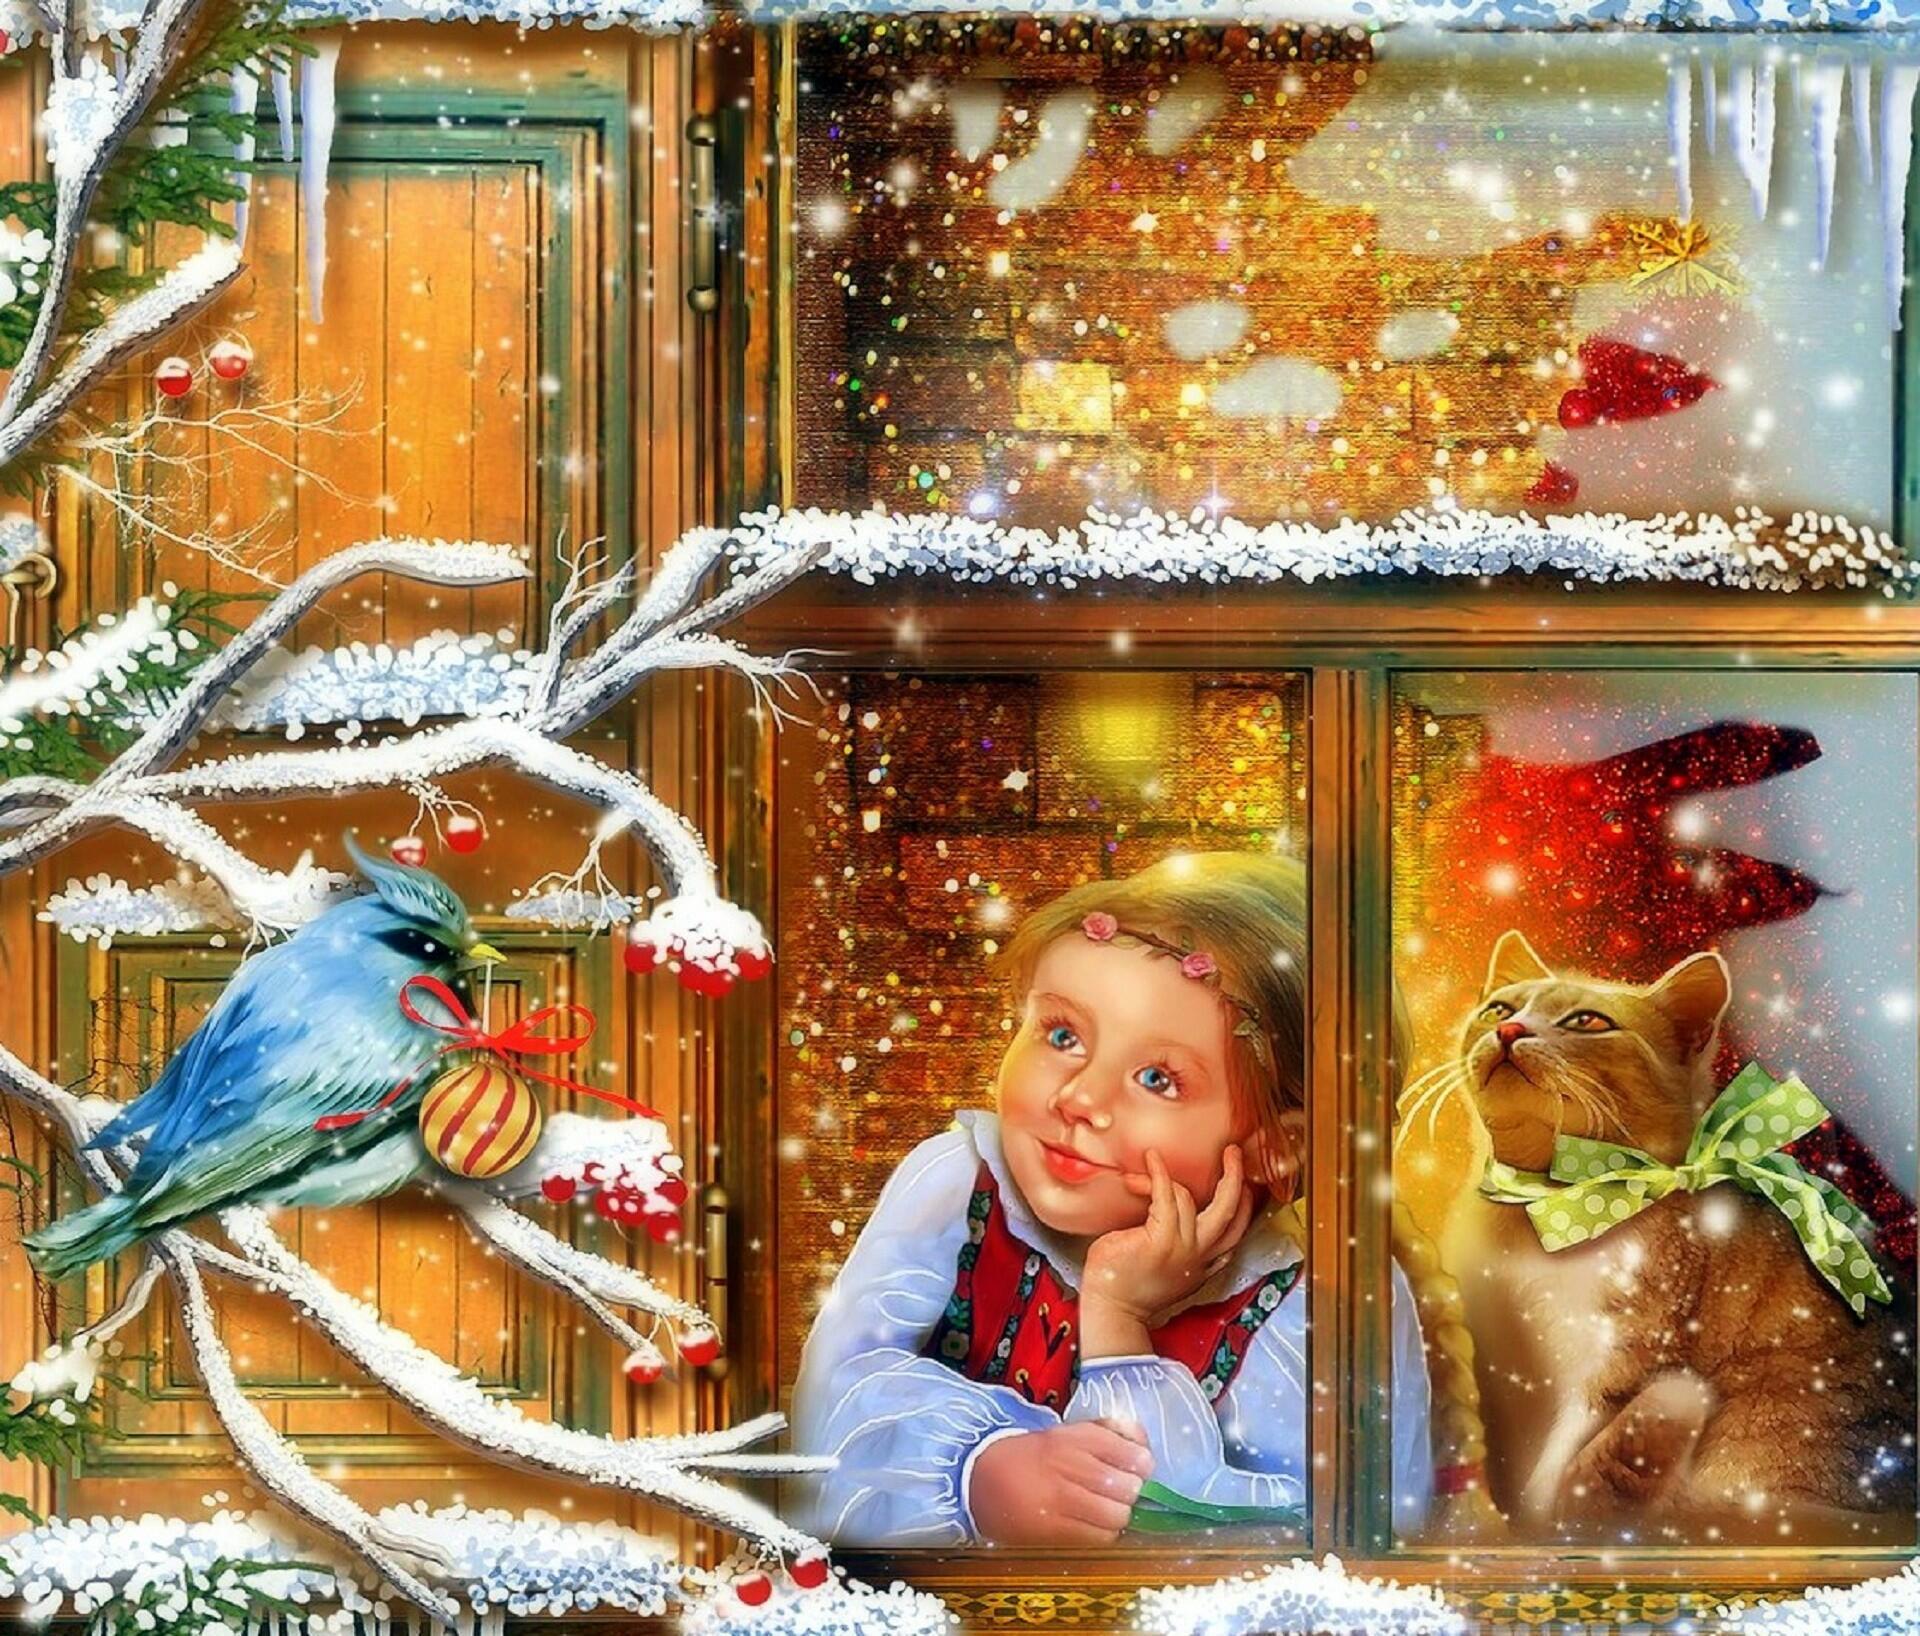 В ожидании новогоднего чуда. В ожидании праздника нового года. Ребенок у зимнего окна. Новогодняя открытка "девочка в окне". Ожидание чуда в новогодний праздник.